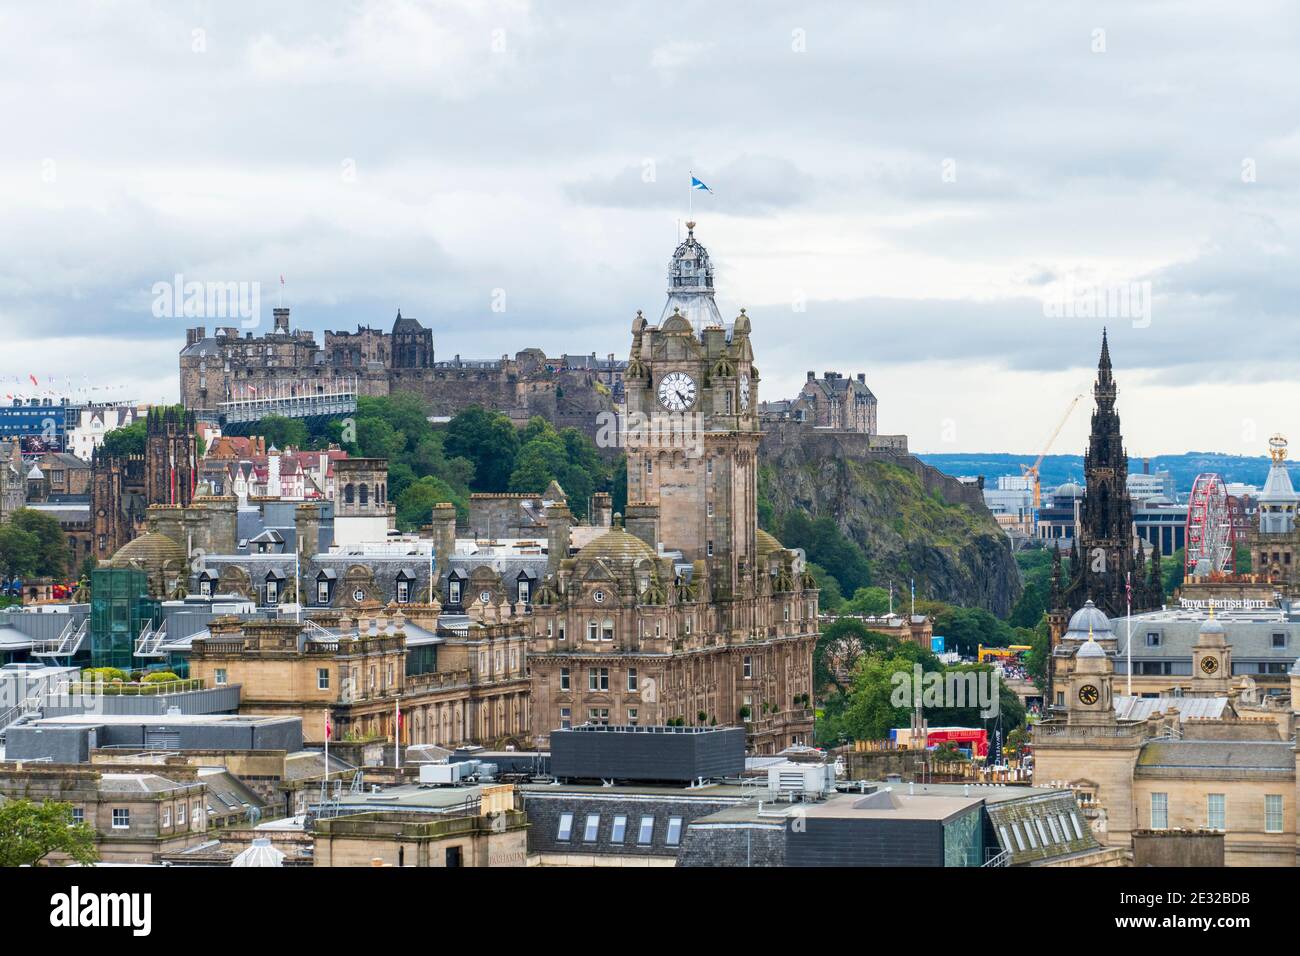 Blick über die Altstadt von Edinburgh mit Schloß, historischem Balmoral Hotel und Scotts Monument Foto Stock